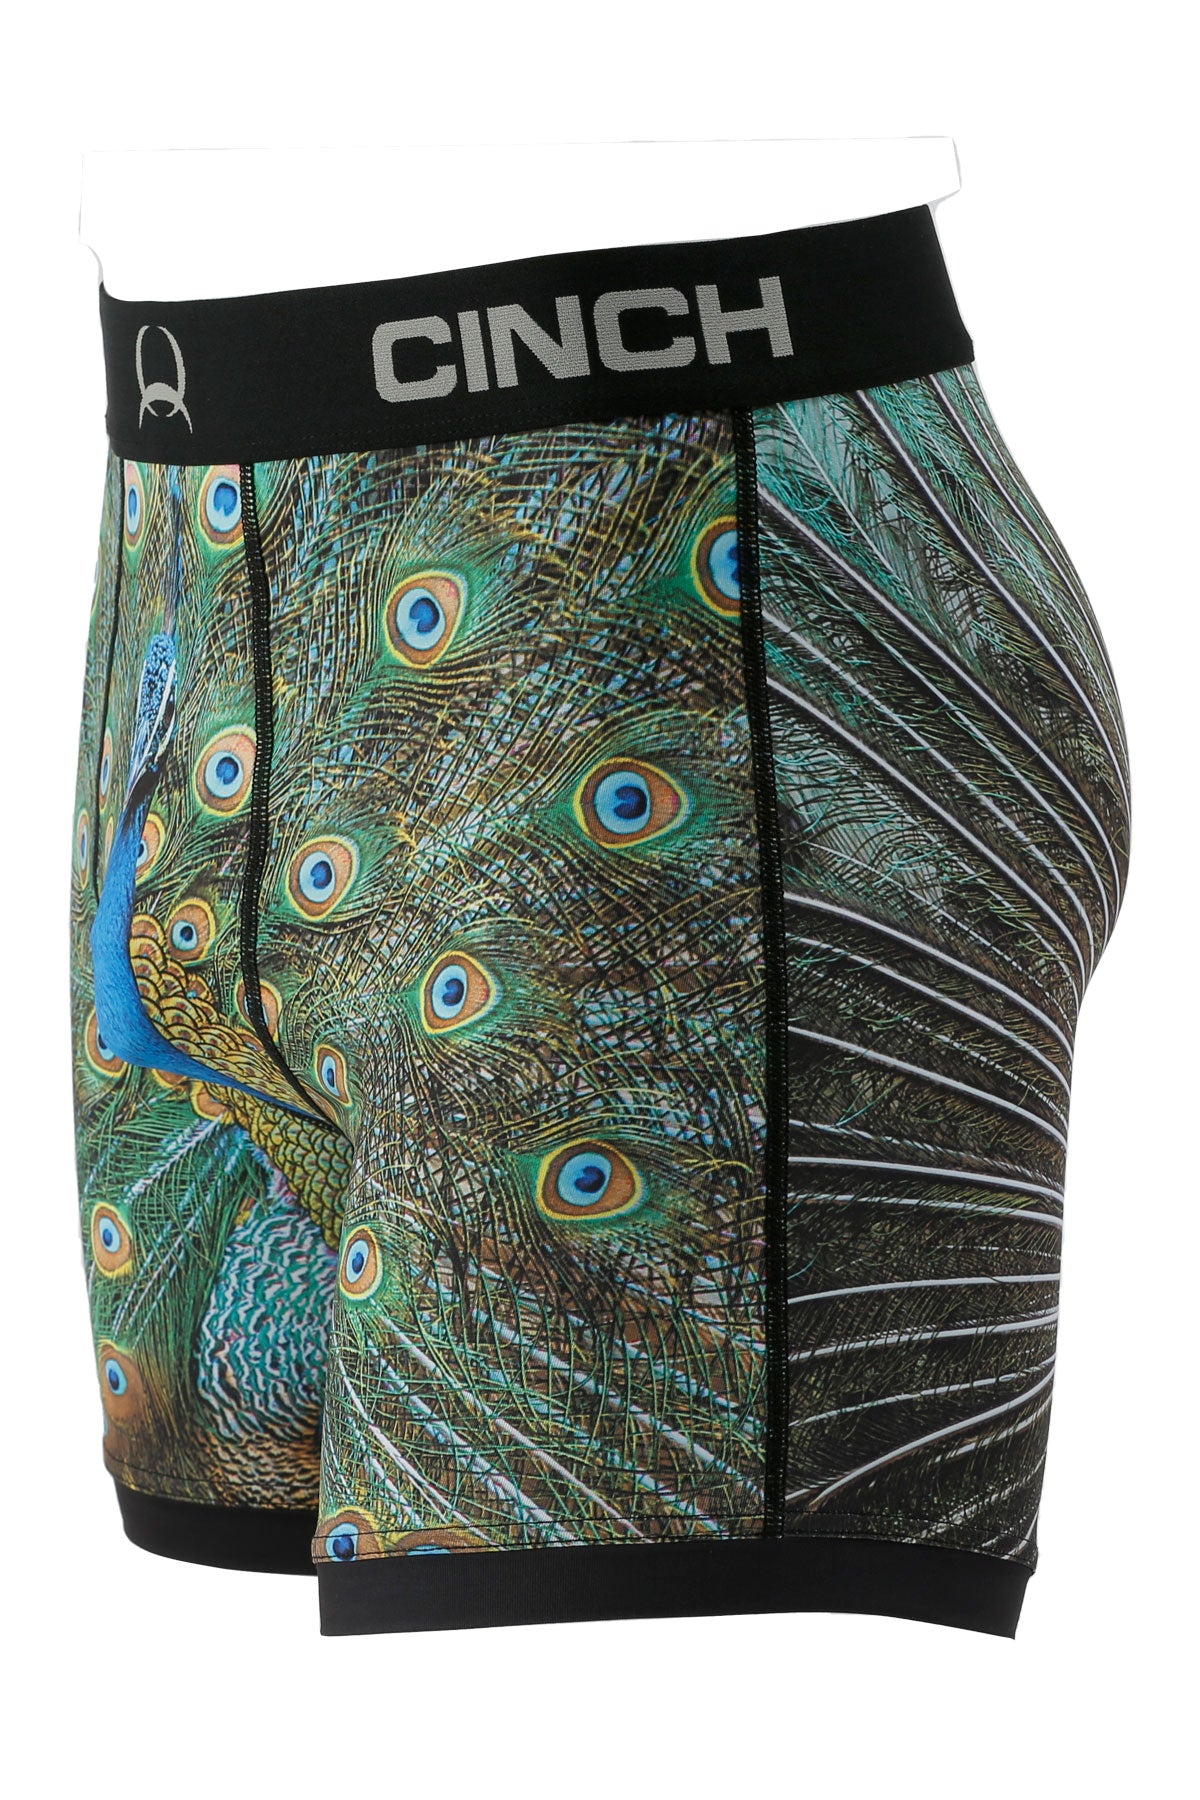 CINCH Men's Peacock Boxer Brief